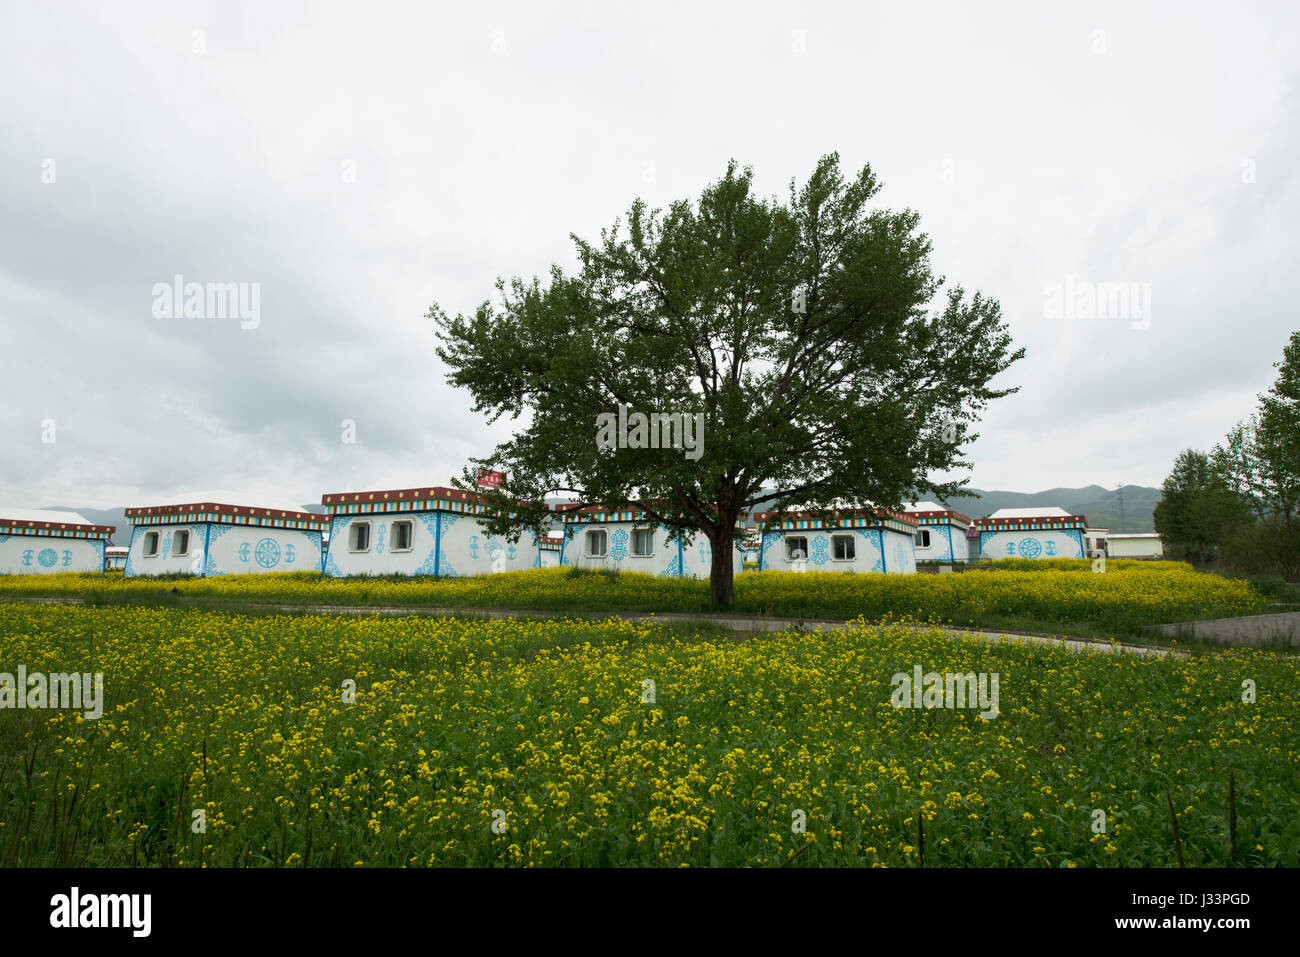 Qinghai，Lago Qinghai，case tibetano，Luglio，verde fiore，，fiori gialli，cina.L'agricoltura,asia,scenario,tranquillo,sunny,tranquillo,colorata,bello,fiore, Foto Stock